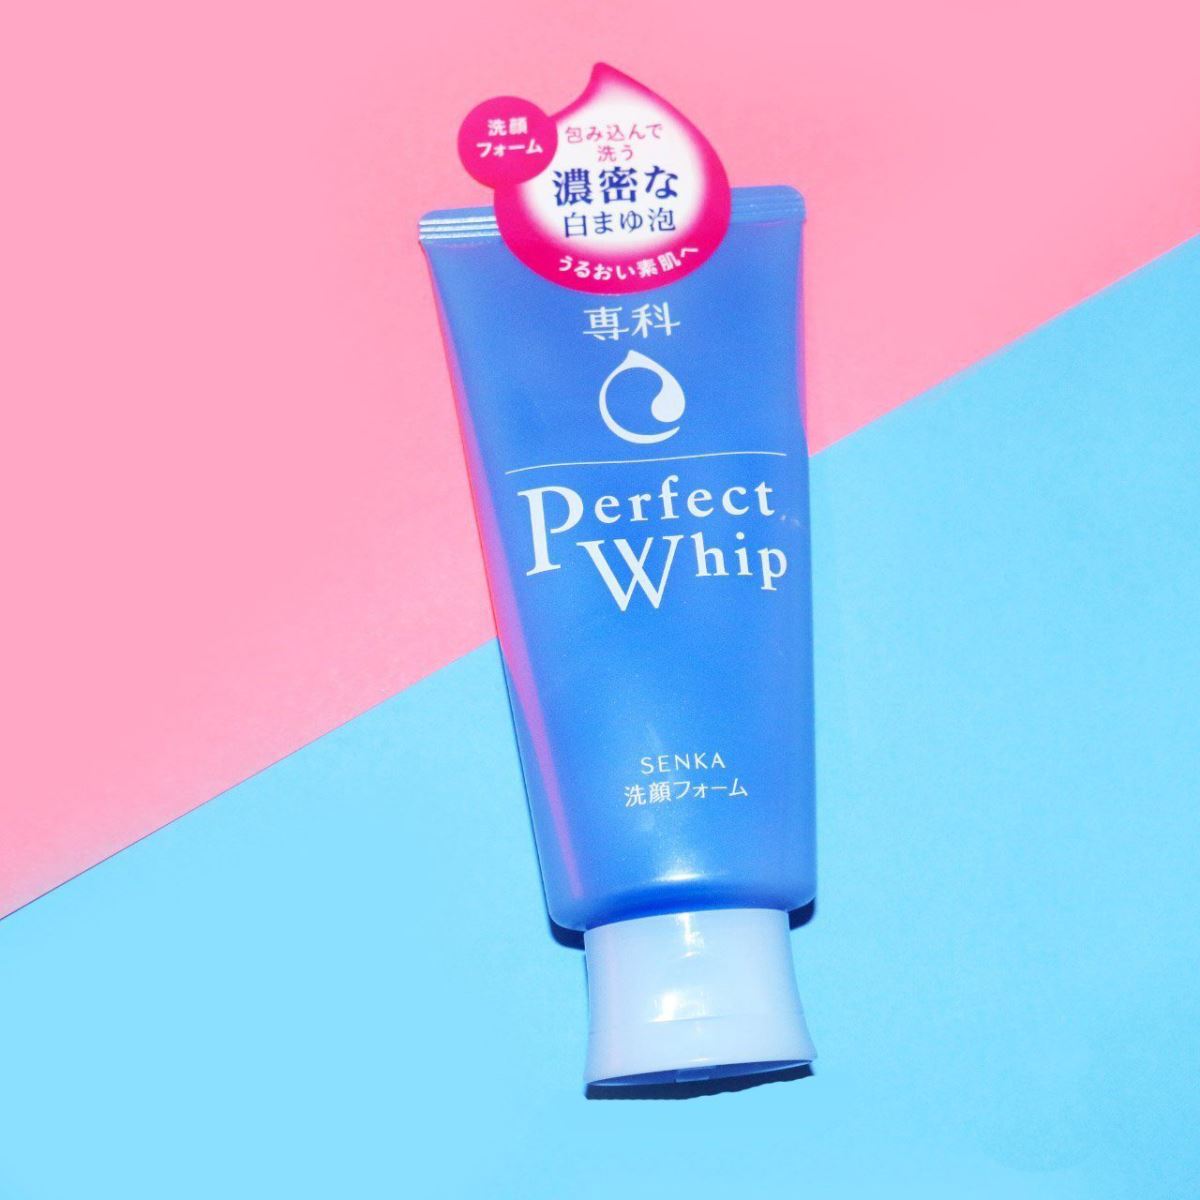 Sữa rửa mặt Senka Perfect Whip xanh dương này nổi tiếng về khả năng dưỡng ẩm